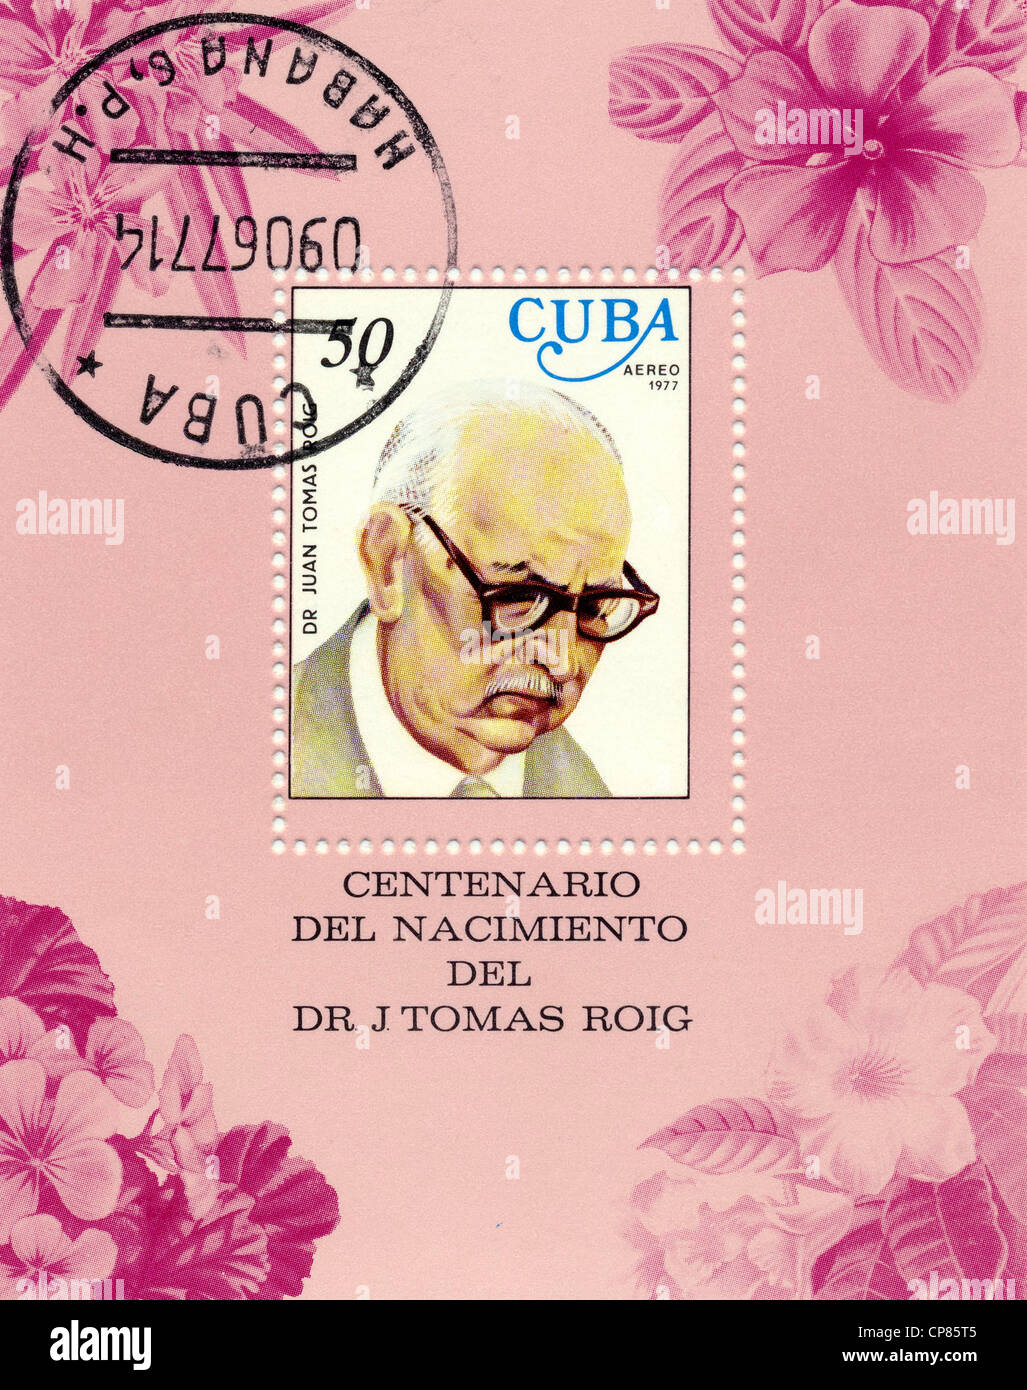 Historic postage stamps from Cuba, Historische Briefmarken, Andenken an den Botaniker Juan Tomas Roig , 1977, Kuba Stock Photo